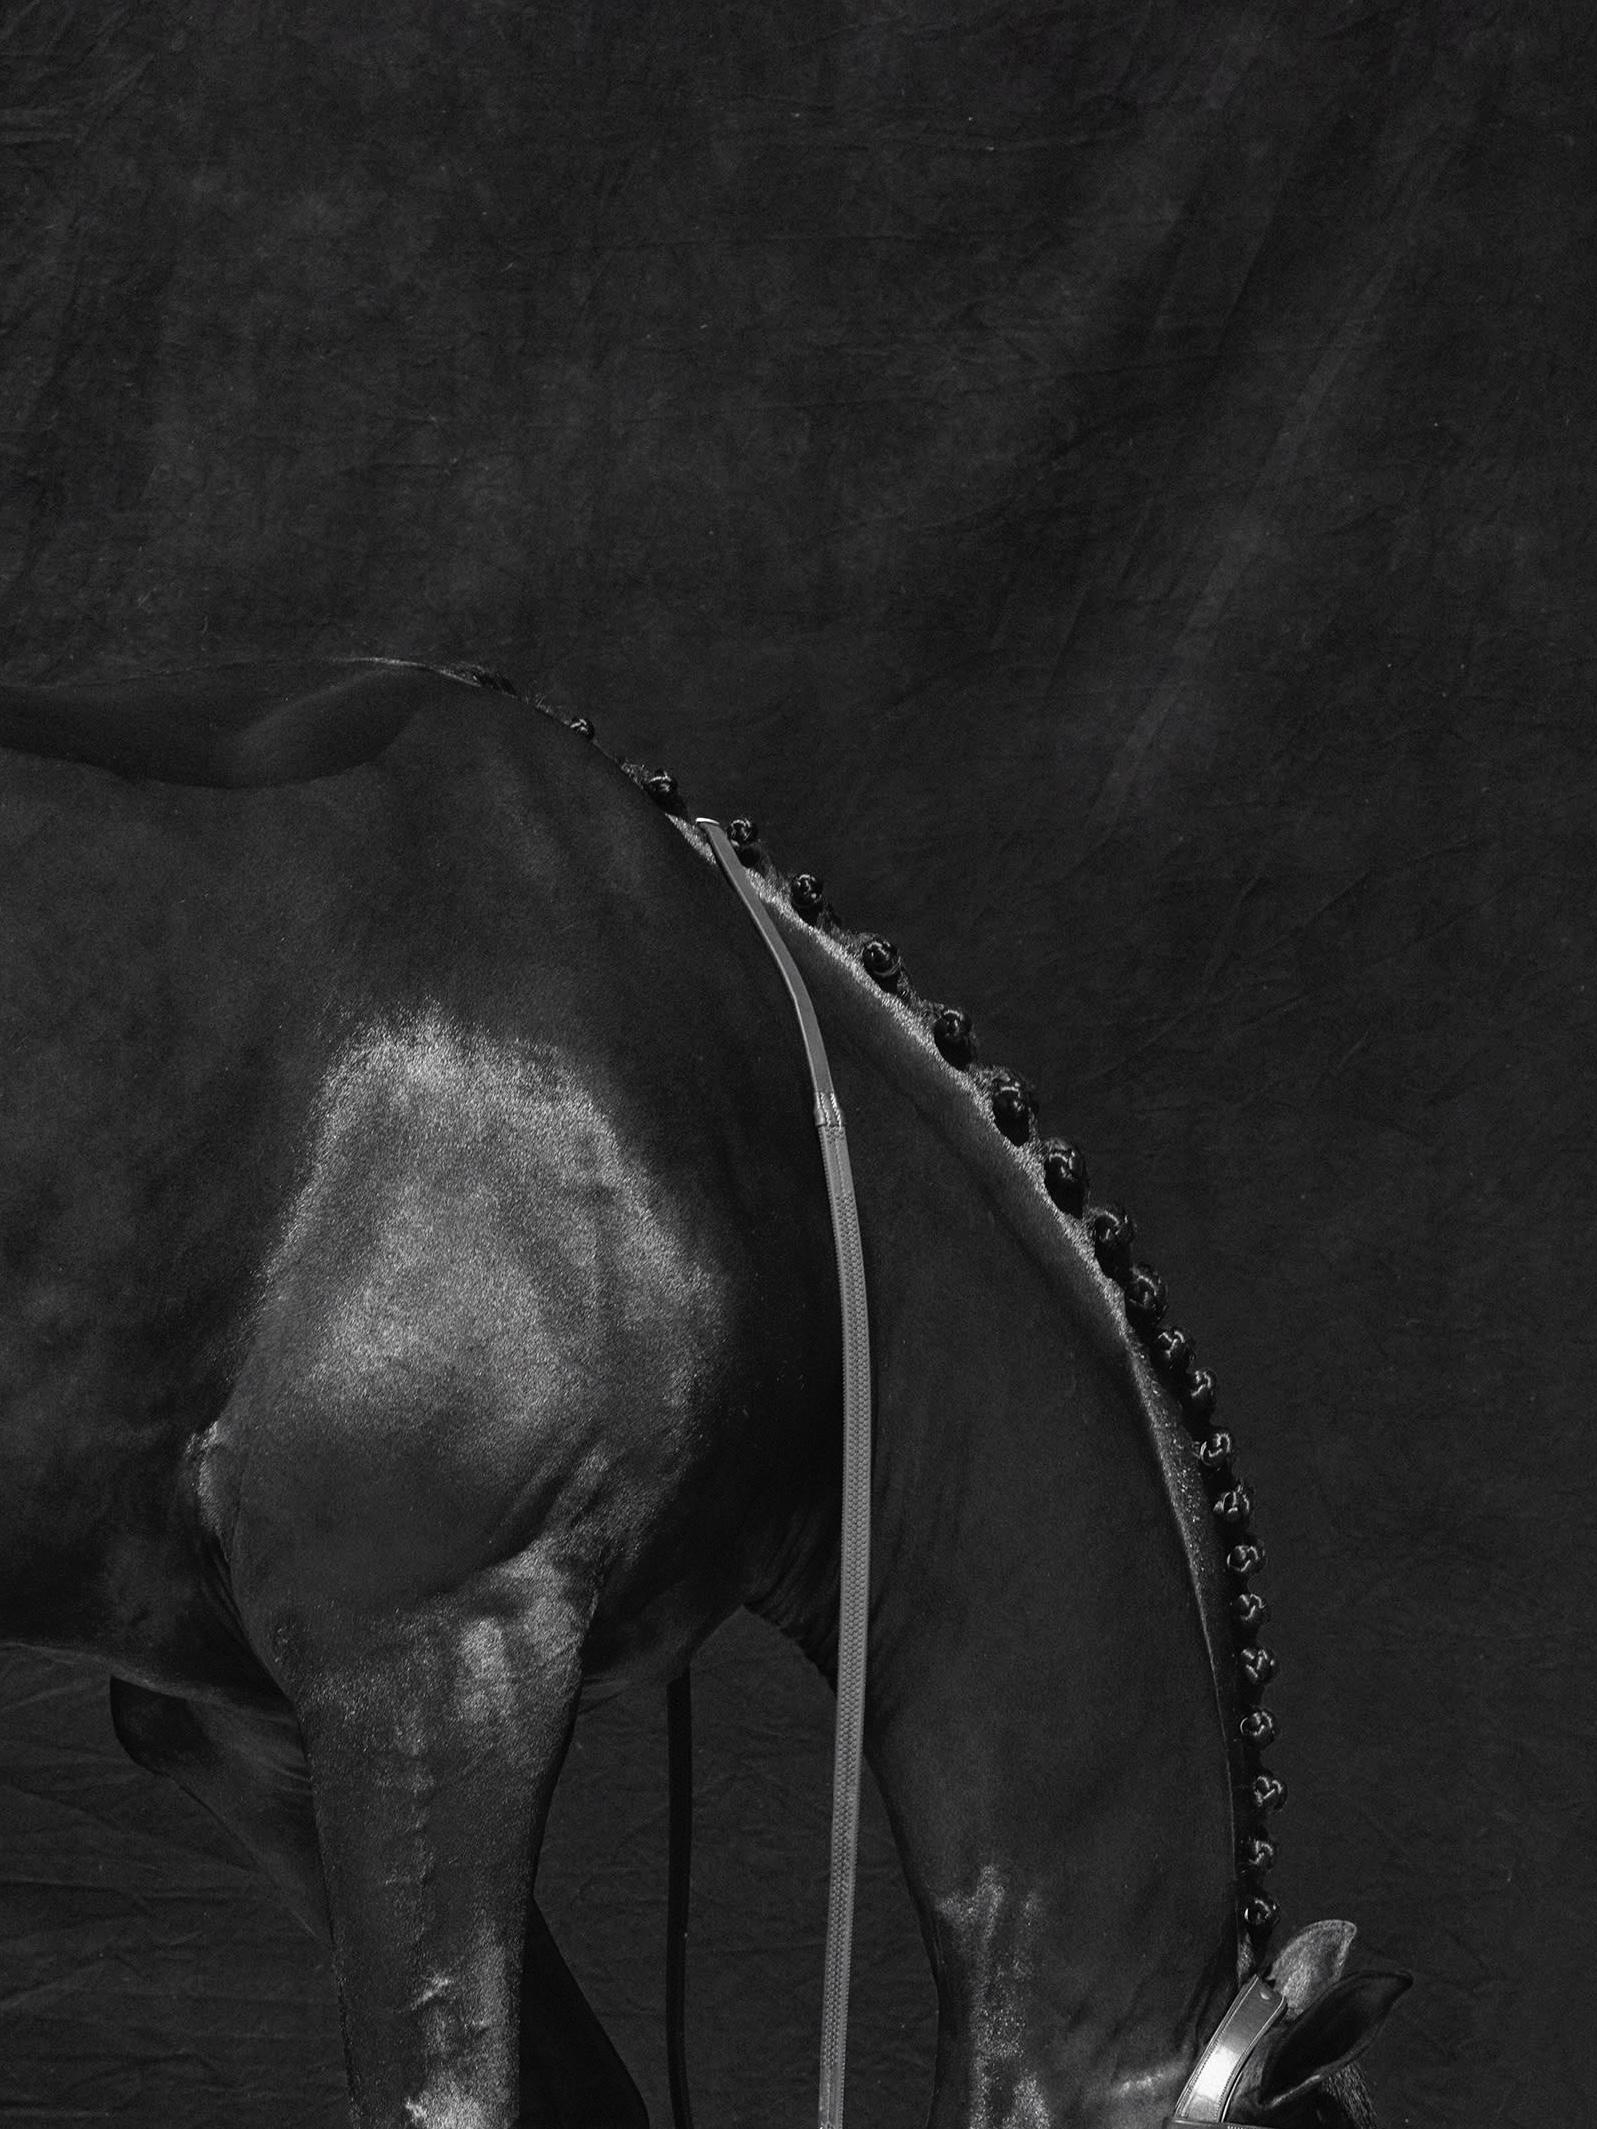 Brainpower Triptychon III, 2018 von Juan Lamarca
Hochwertiges archivfestes Baumwollpapier
Bildgröße: 17 x 13 Zoll
Ausgabe 4 von 7 plus 2 AP
Ungerahmt

Die Horse Series von Juan Lamarca ist eine abstrakte Sammlung von Fotografien, die